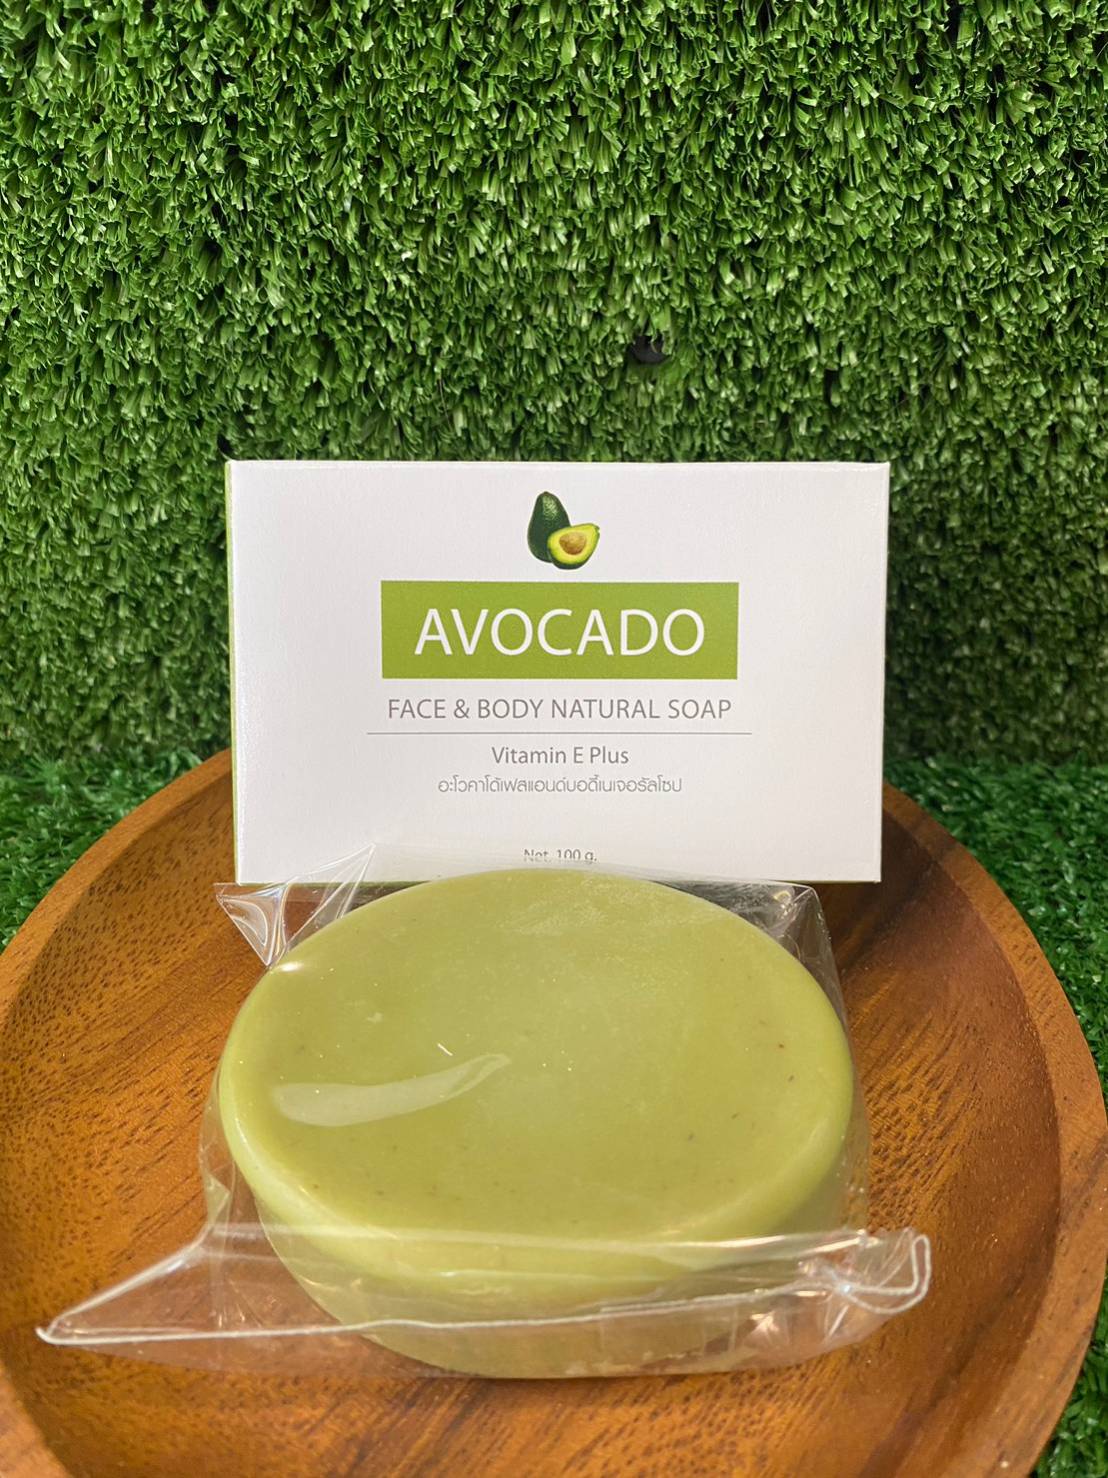 Avocado Face & Body Natural Soap 100g.